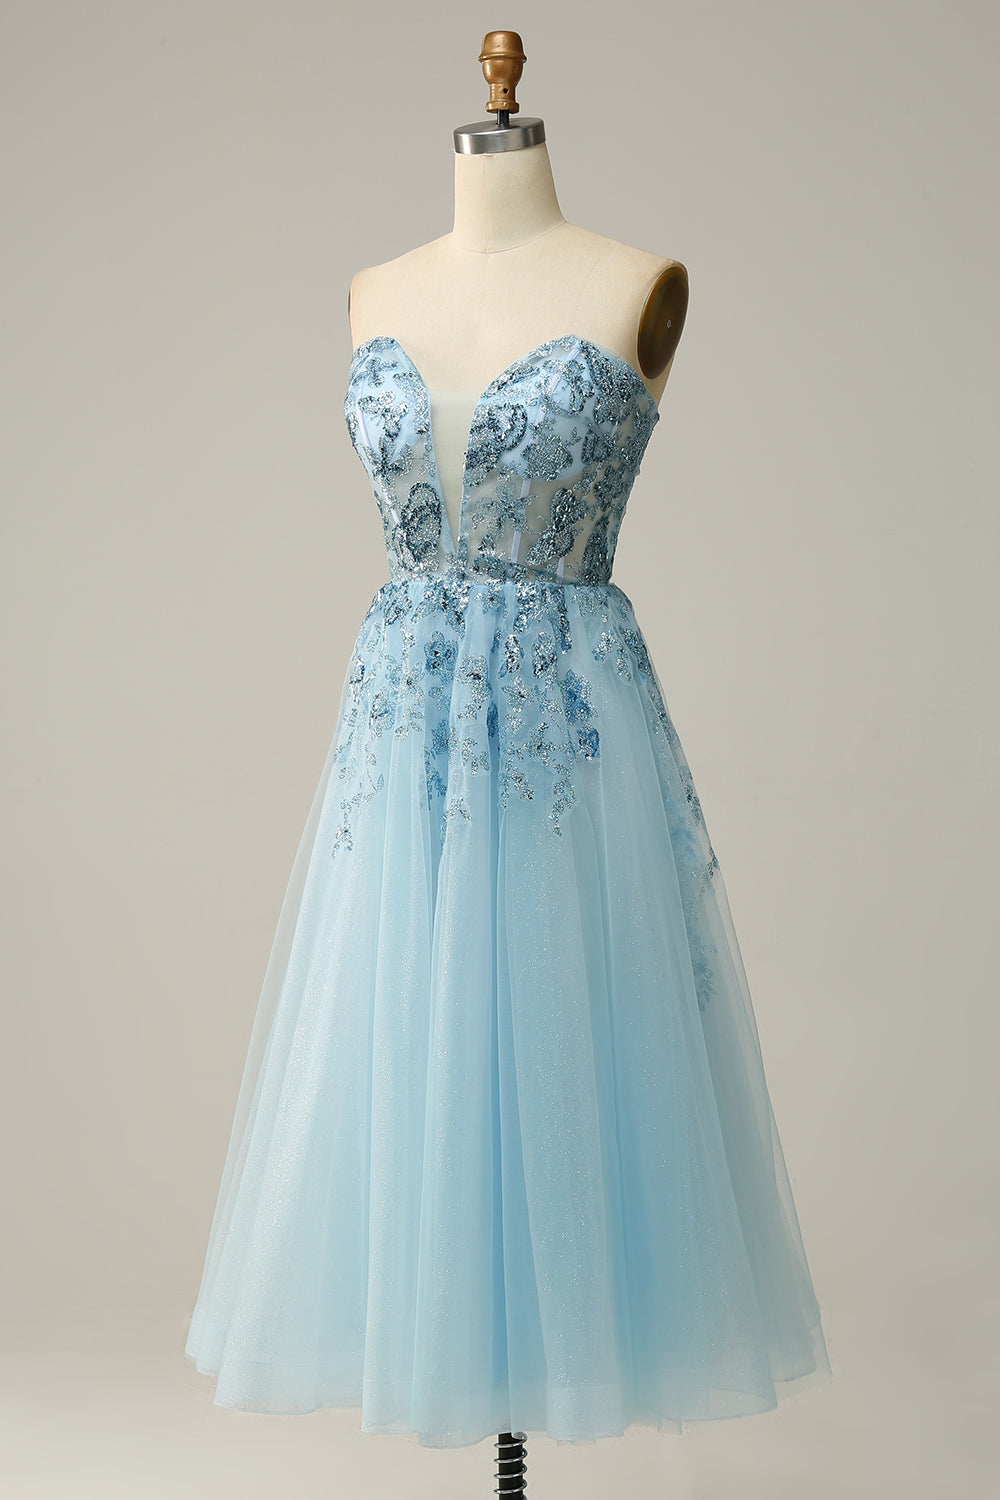 Sky Blue Sweetheart Slit Corset Tulle Prom Dress